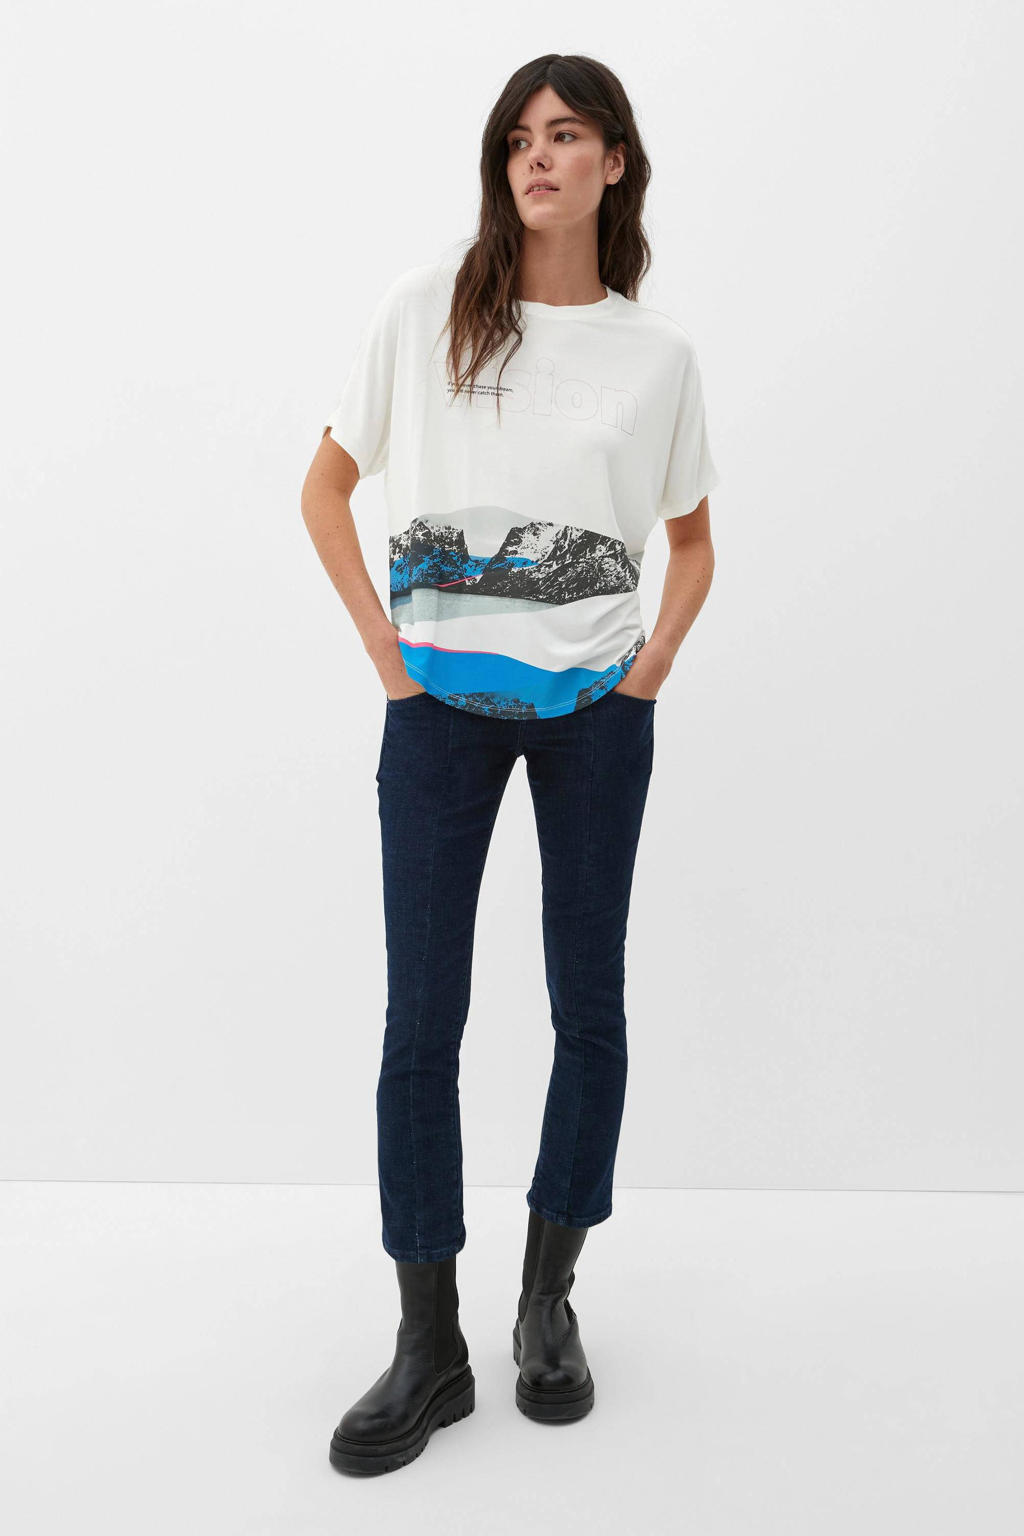 Wit, blauw en zwarte dames s.Oliver T-shirt van viscose met printopdruk, korte mouwen en ronde hals